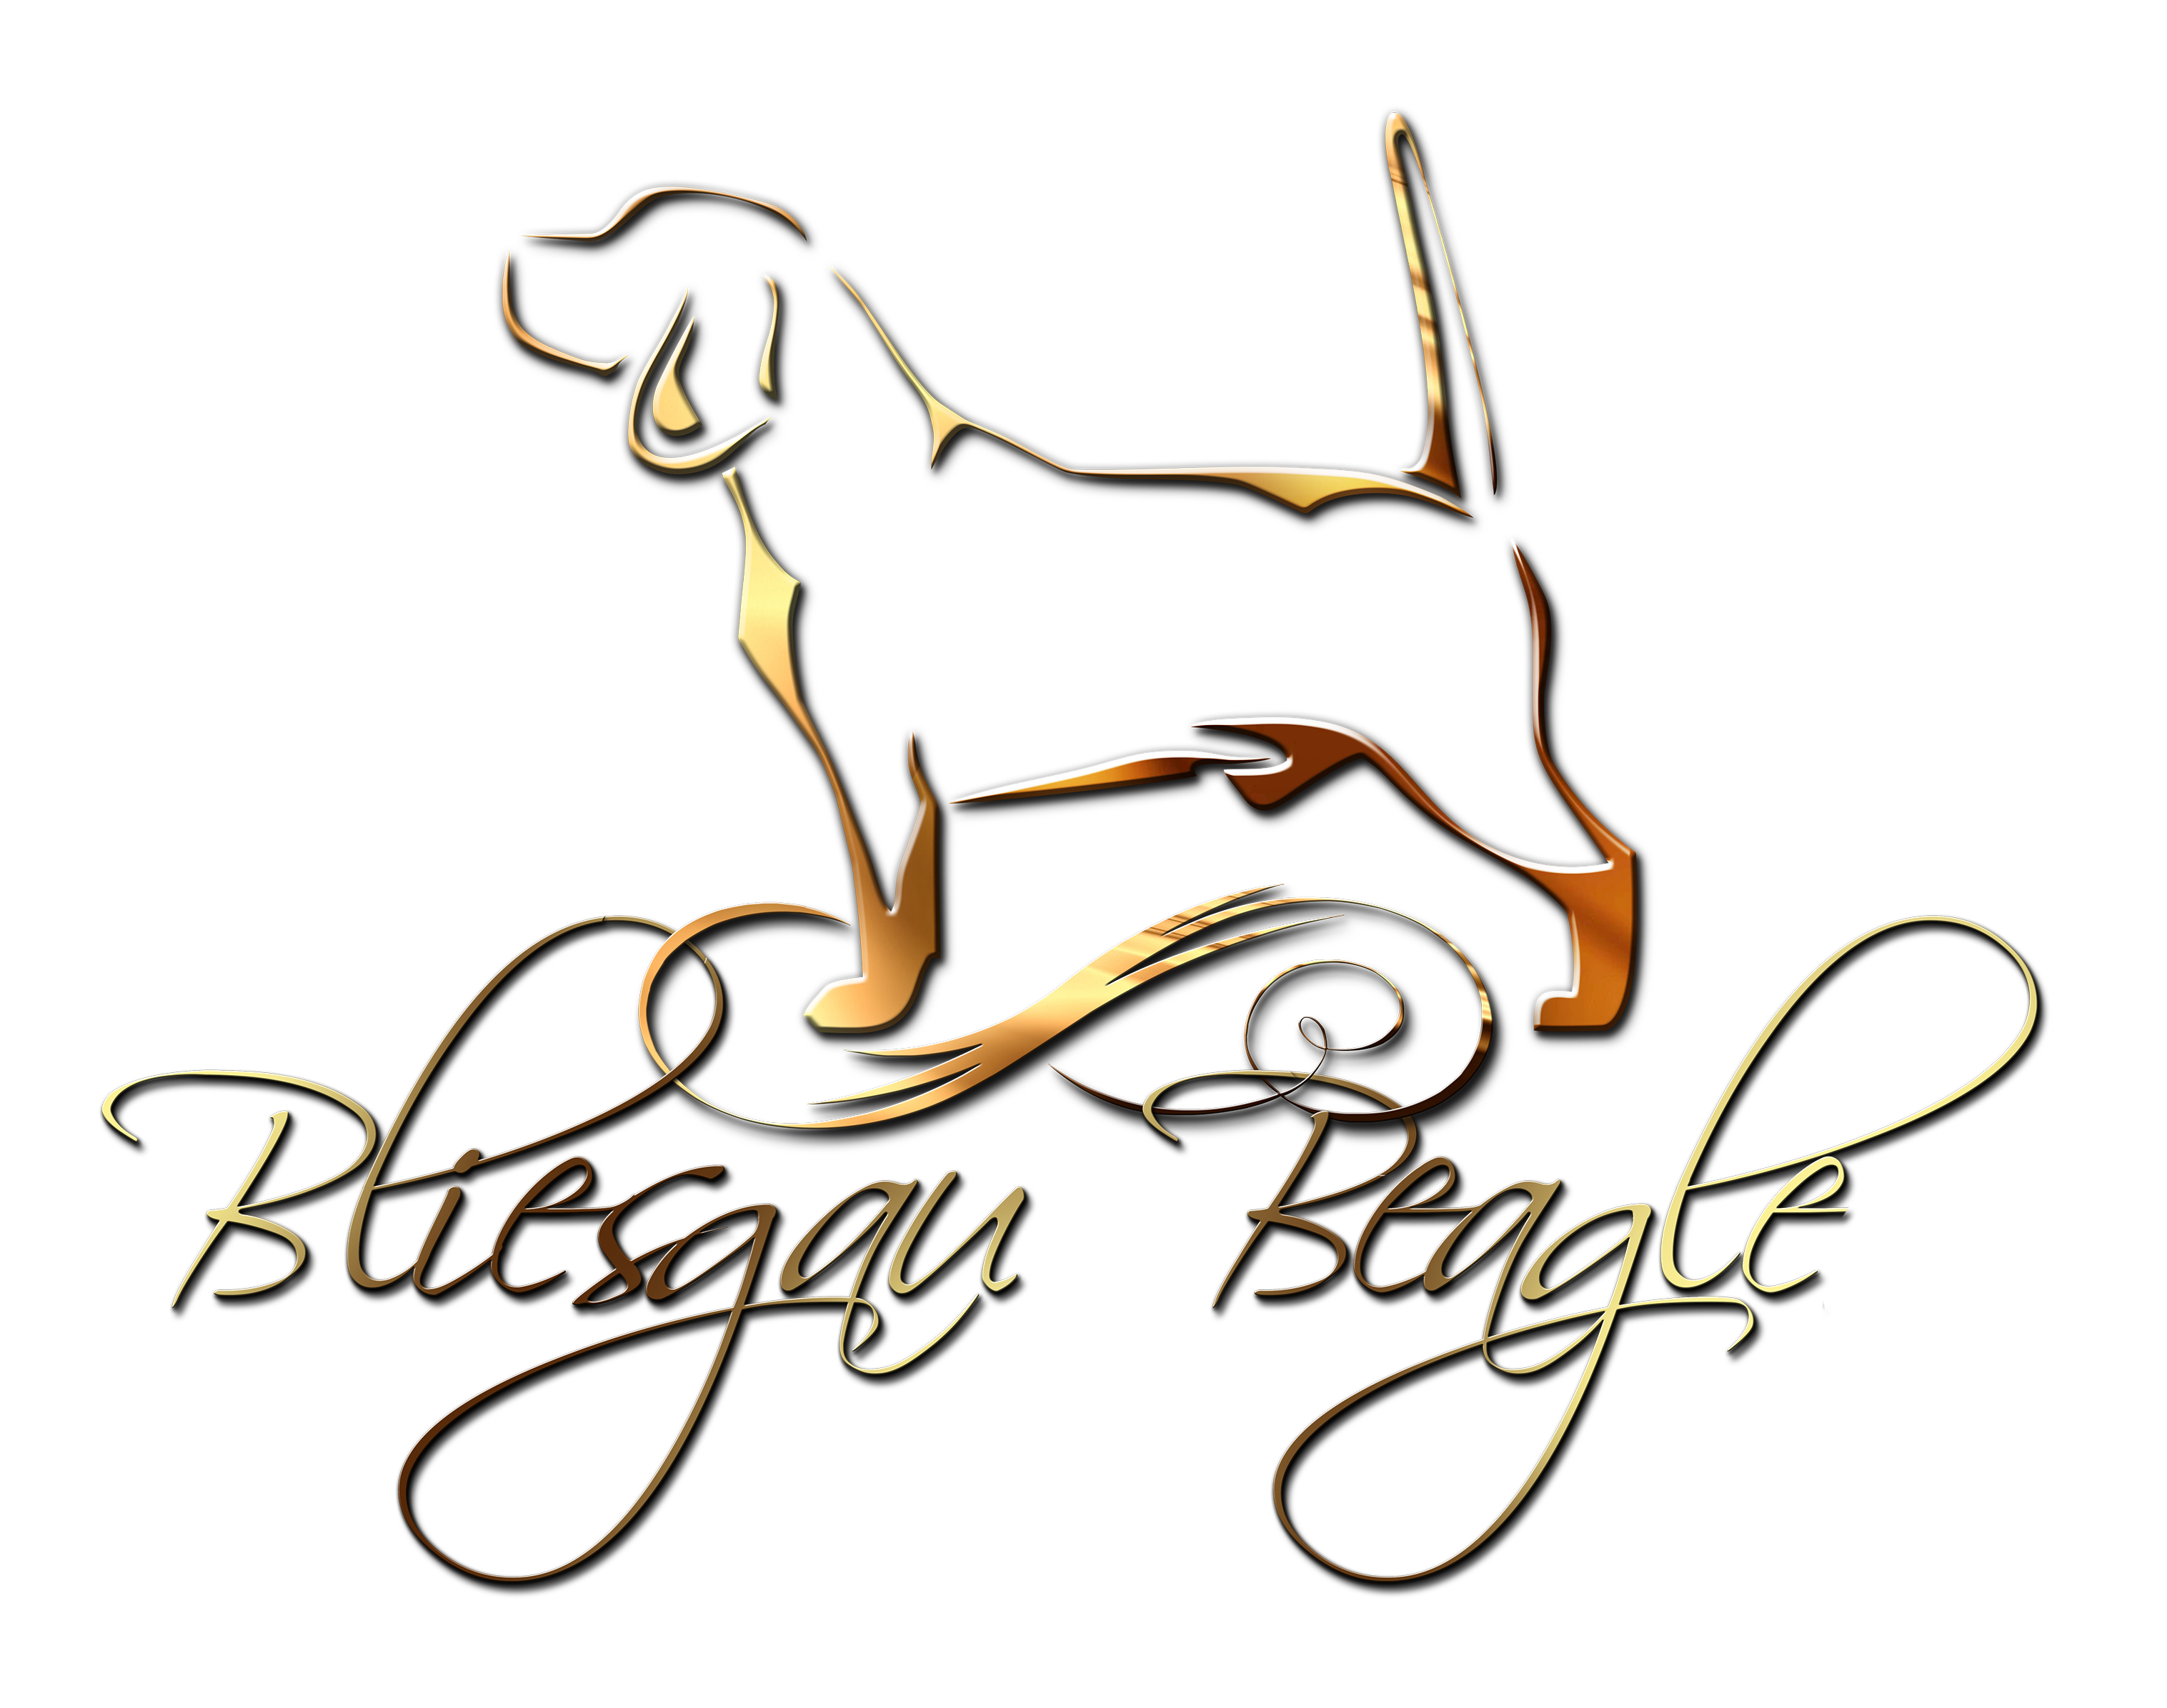 Bliesgau logo